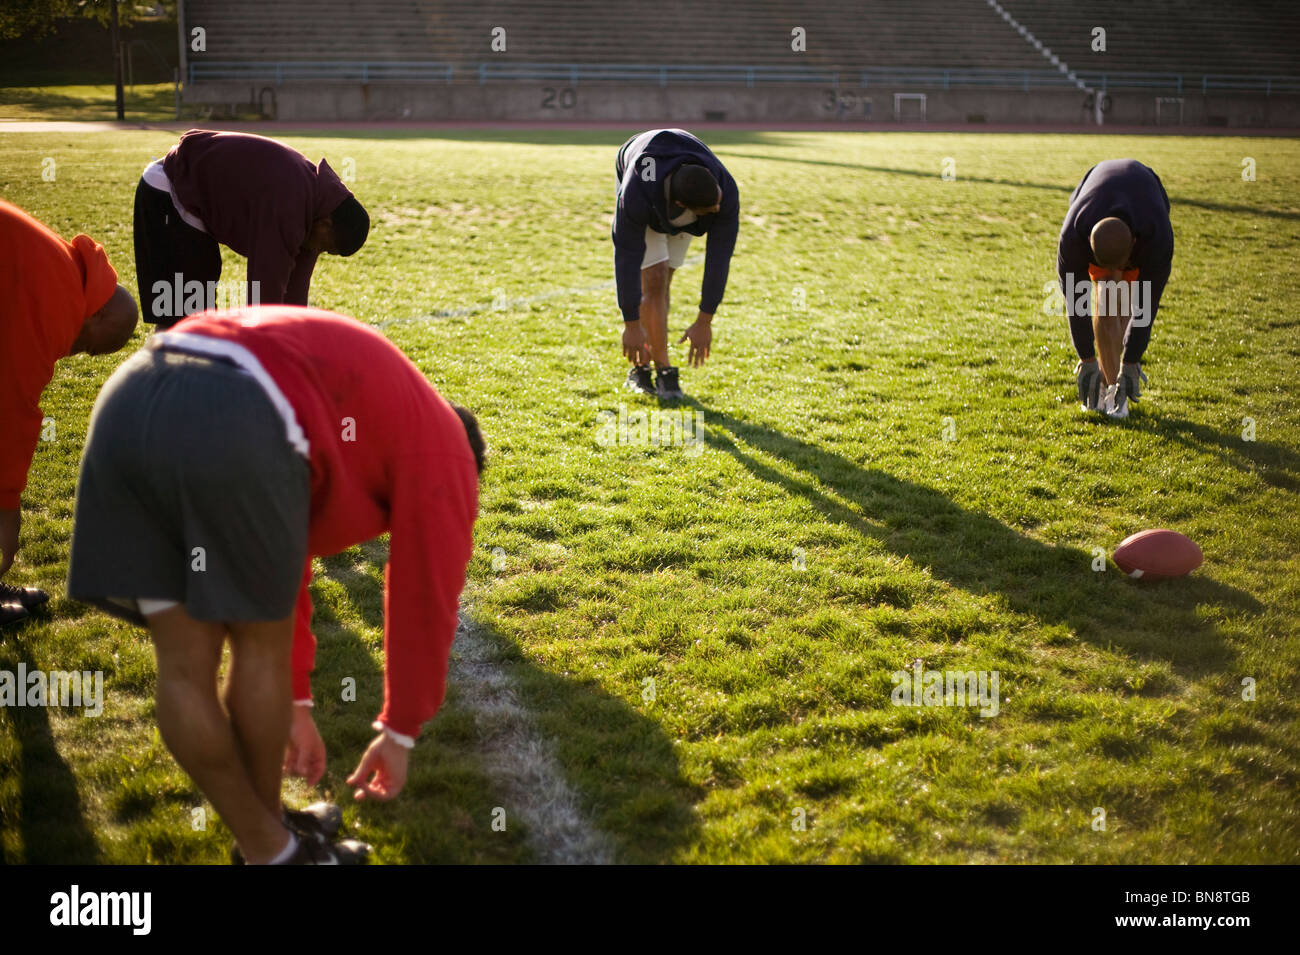 Men training on football field Stock Photo